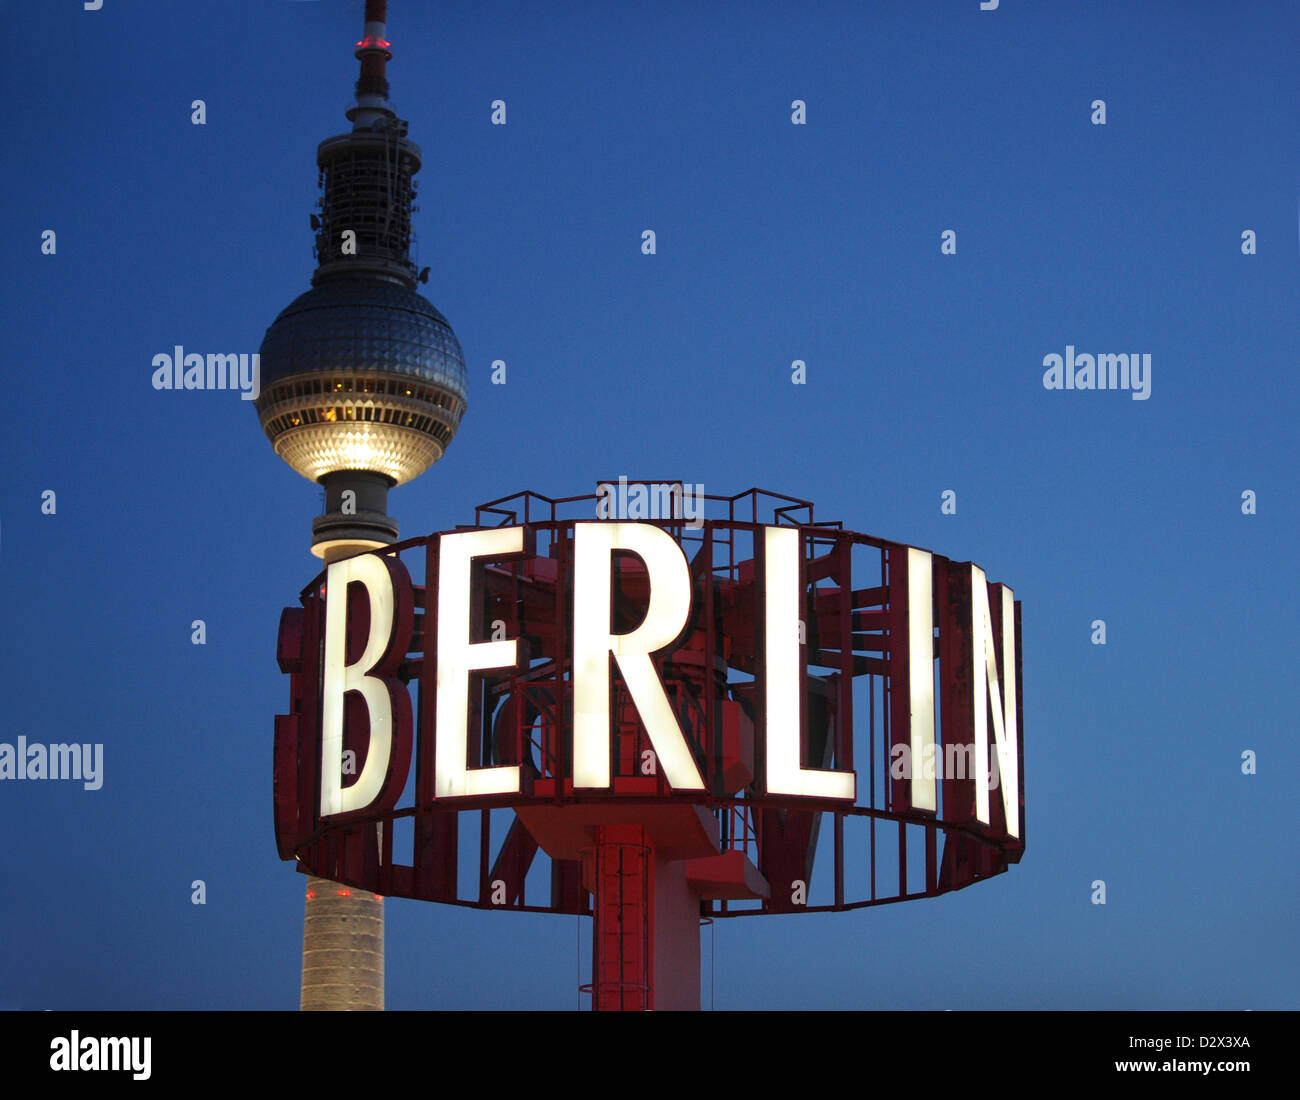 Berlin, Allemagne, enseigne lumineuse avec le mot tour de télévision de Berlin dans l'arrière-plan d Banque D'Images